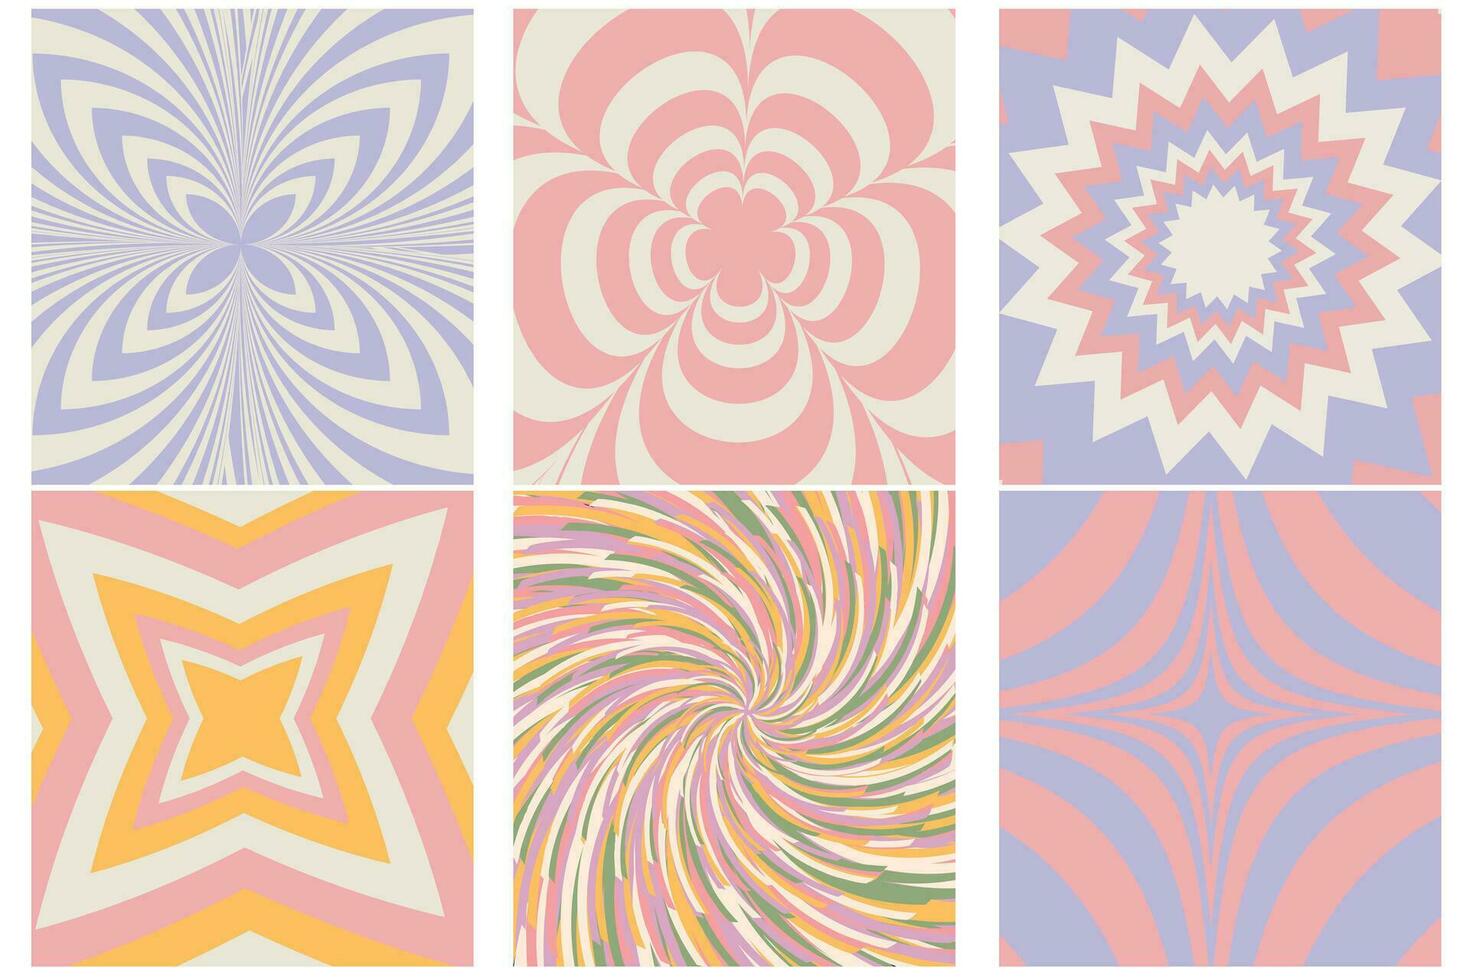 häftig hippie 70s bakgrunder. vågor, virvla runt, snurra mönster med hjärta, tusensköna, blomma, fjäril. vriden och förvrängd vektor textur i trendig retro psychedelic stil. y2k estetisk. vektor